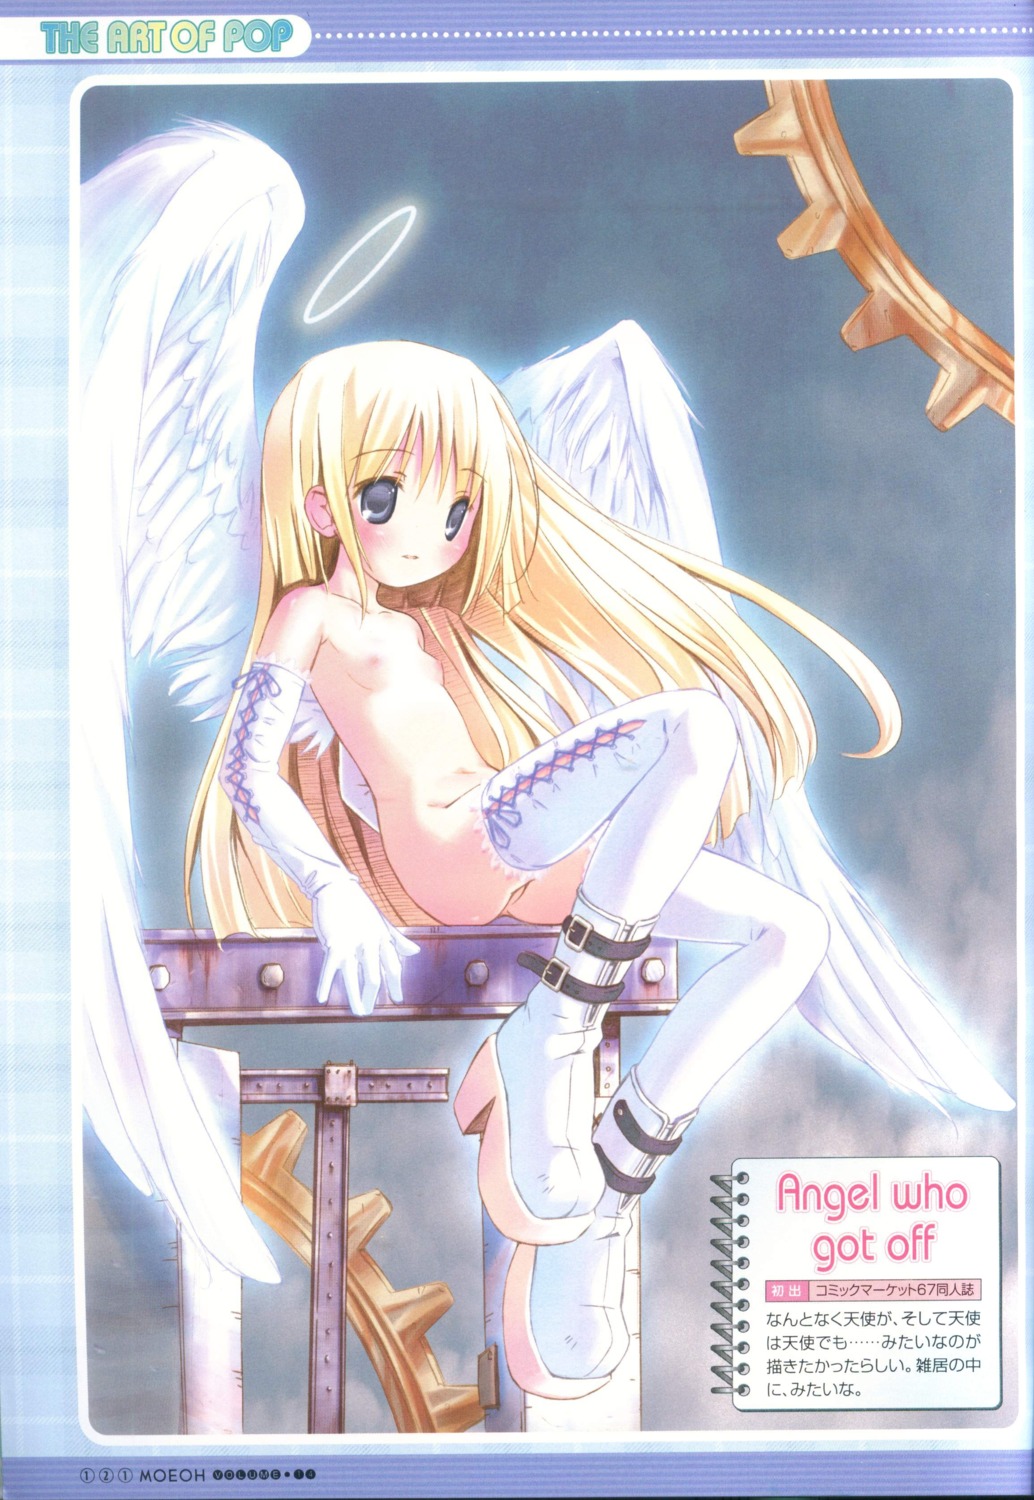 angel loli naked nipples pop wings